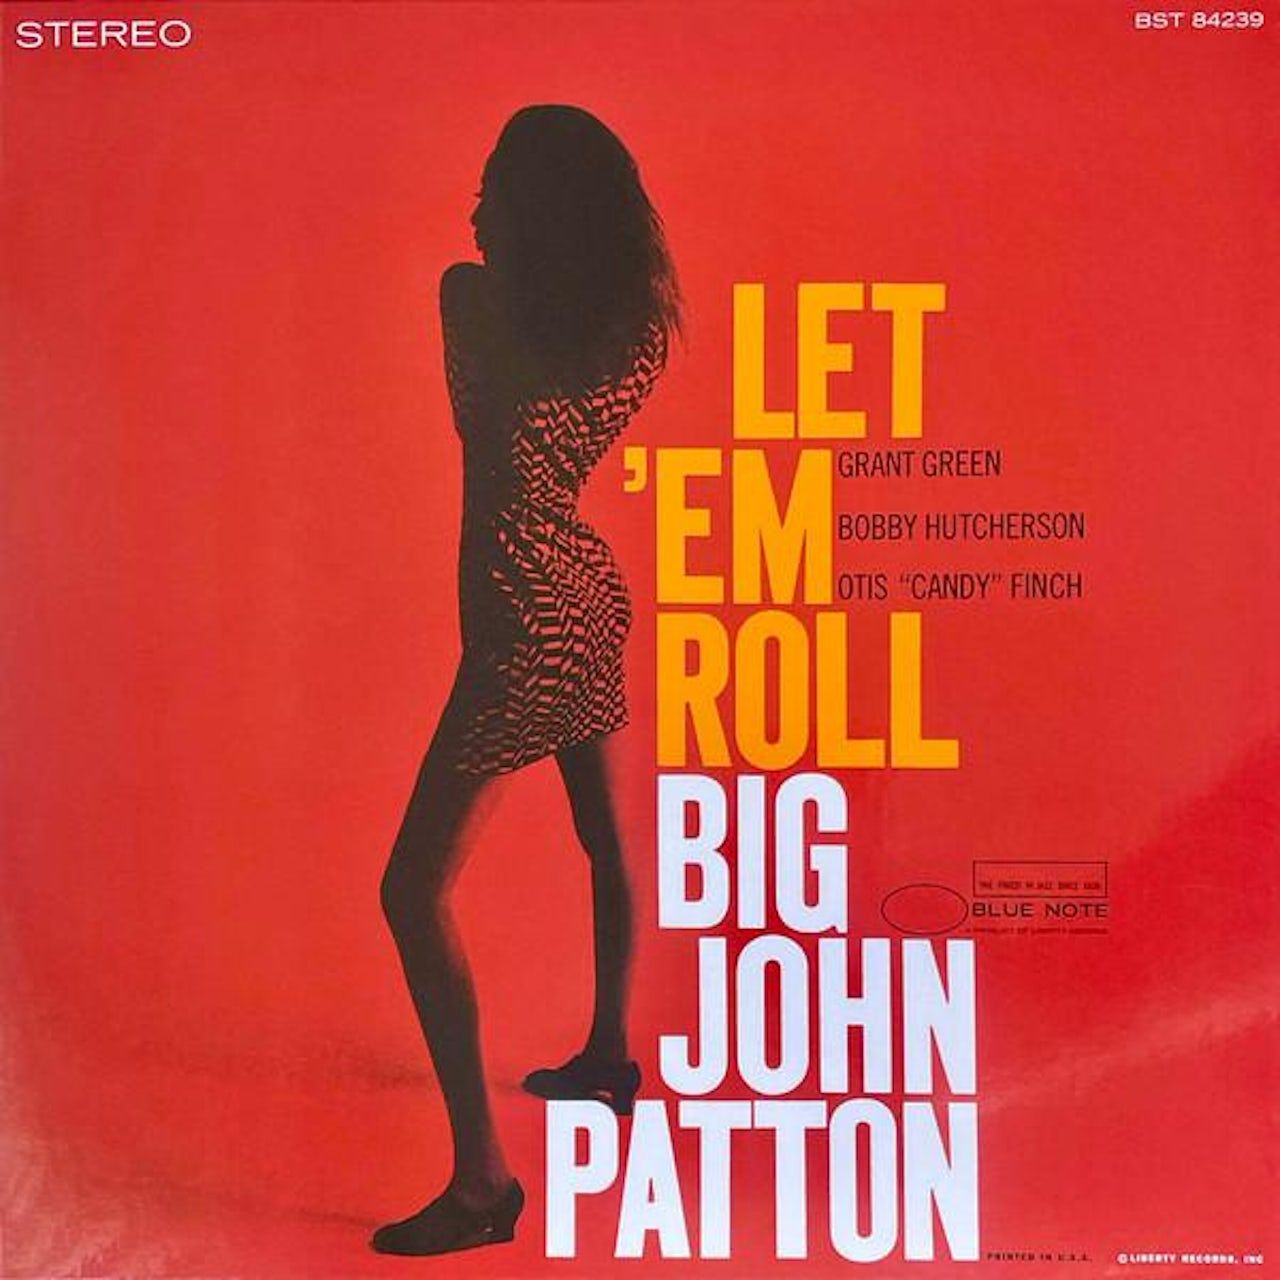 0602438963706, Виниловая пластинка Patton, Big John, Let 'em Roll (Tone Poet) виниловая пластинка patton big john let ‘em roll